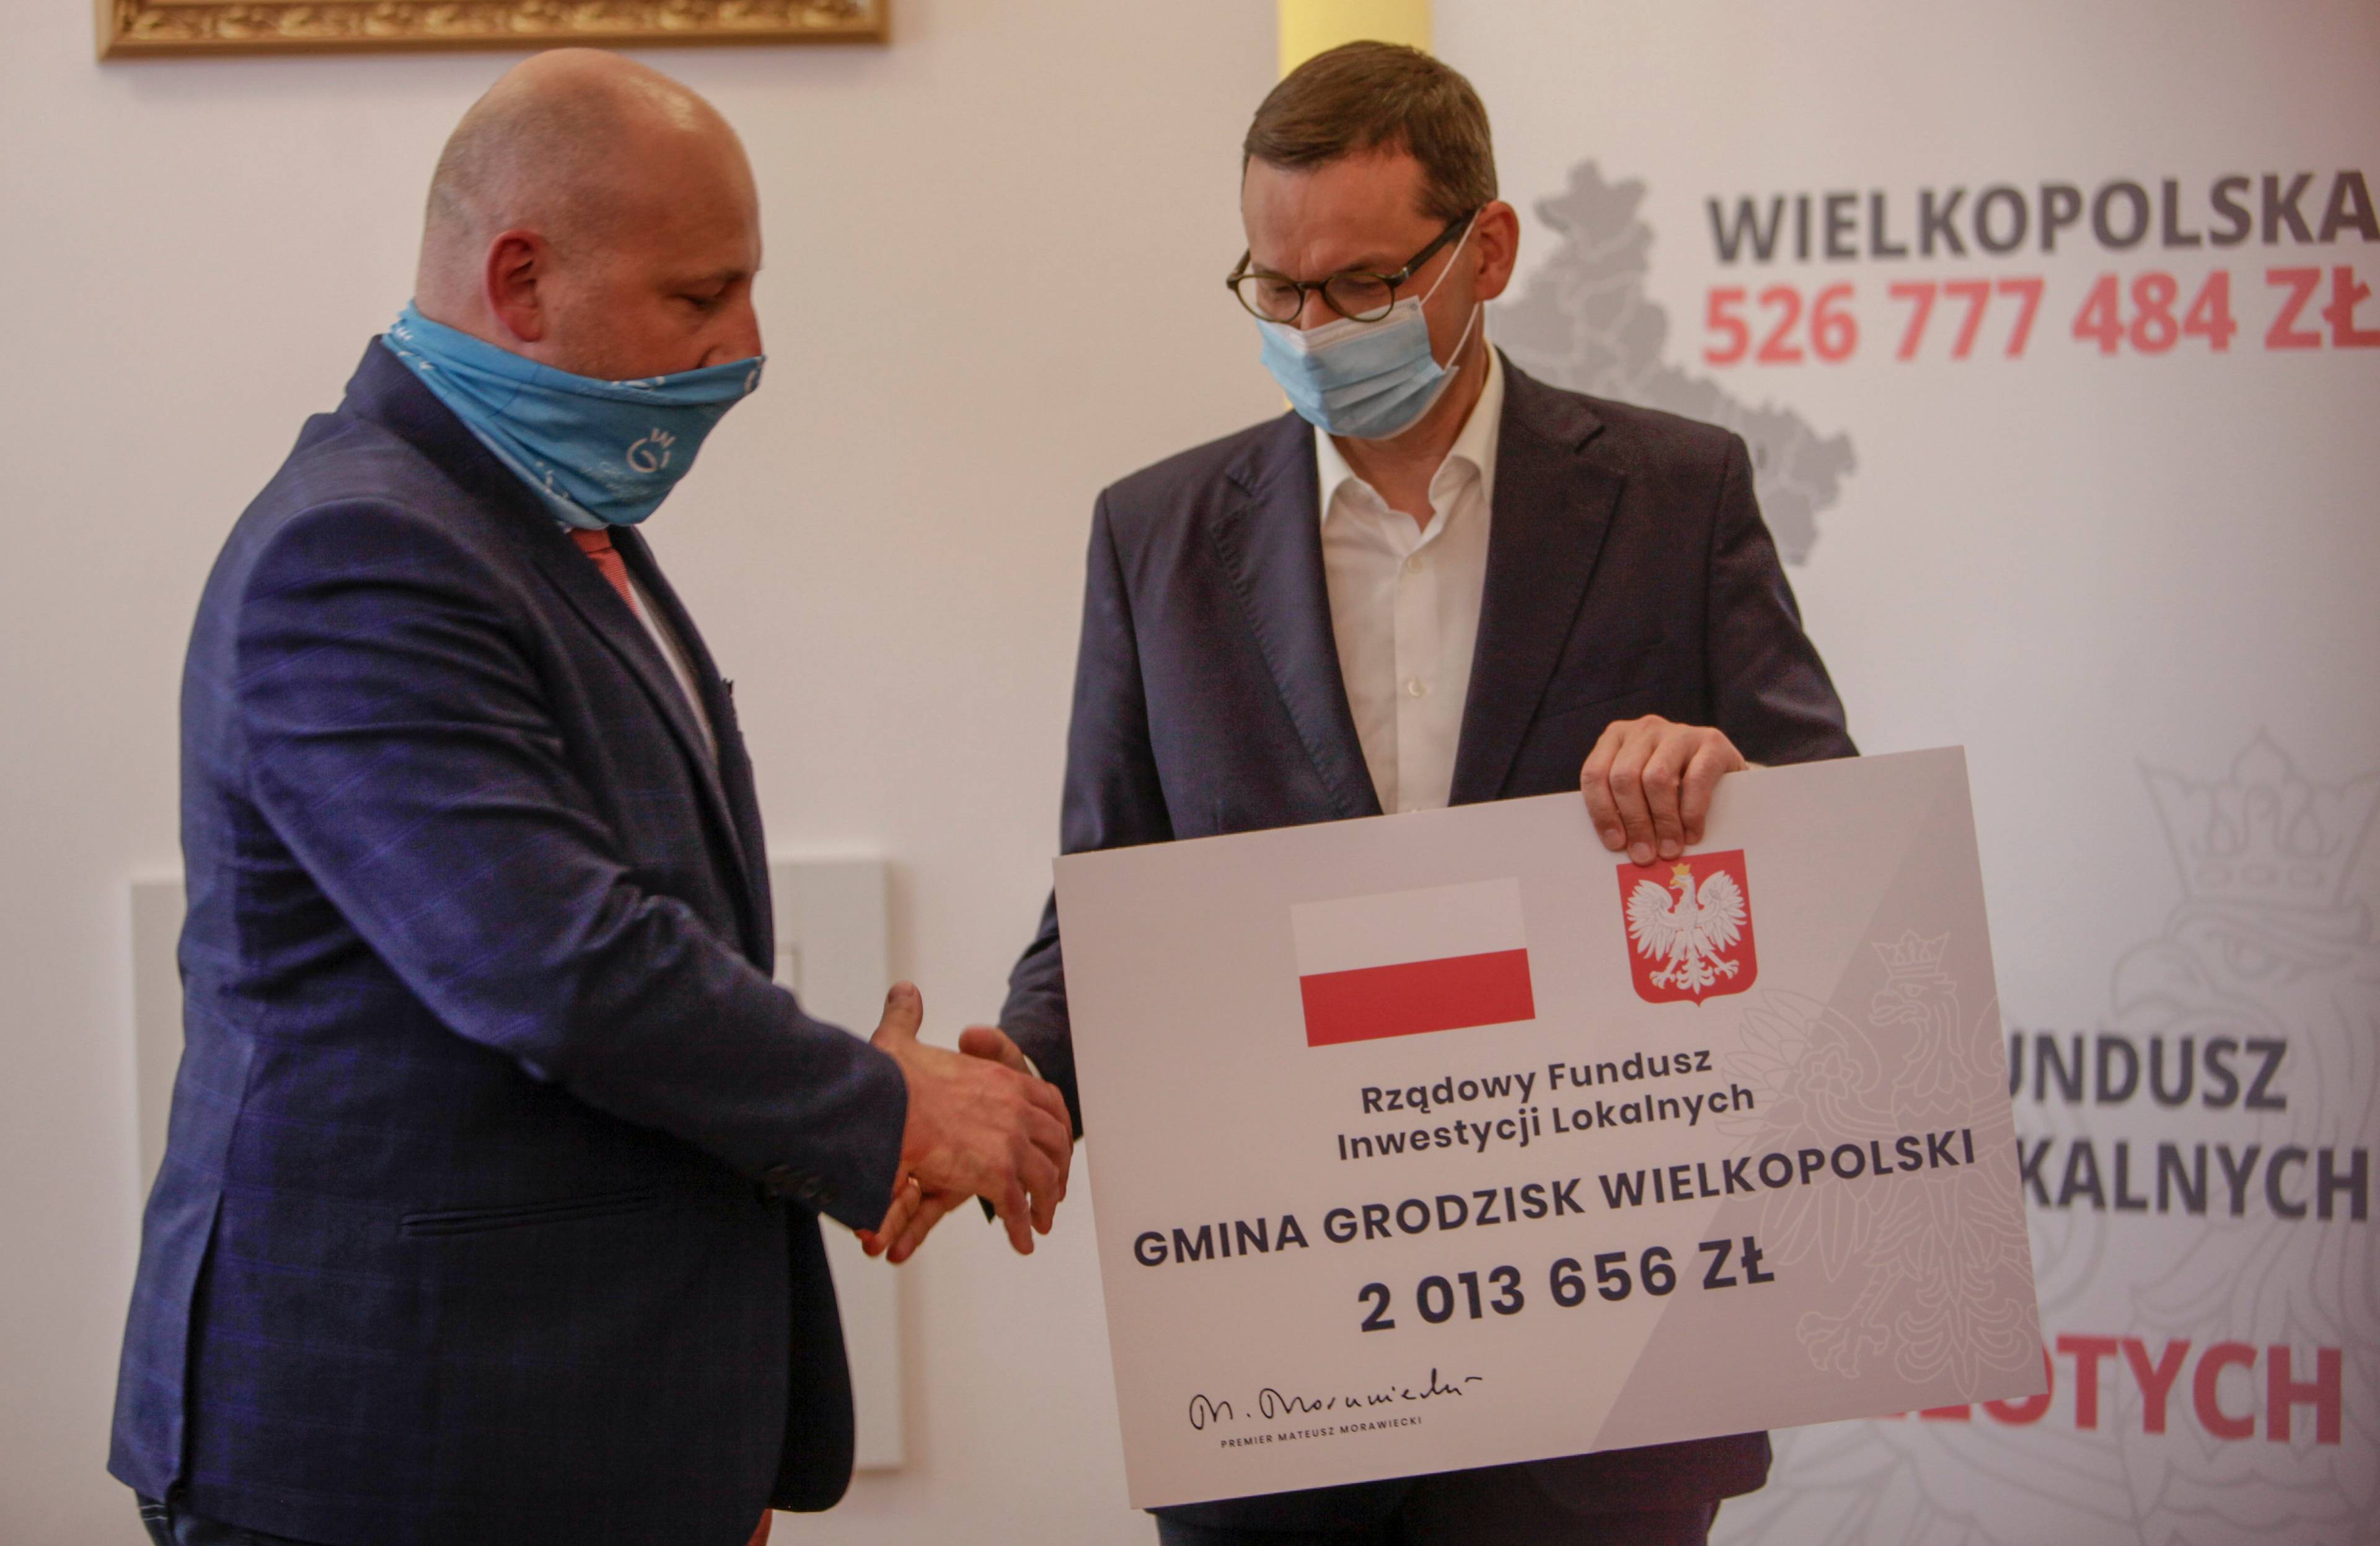 Premoier Morawiecki wręcza wielka planszę - "czek" symbolizujący dotacje z funduszu inwestycji lokalnych